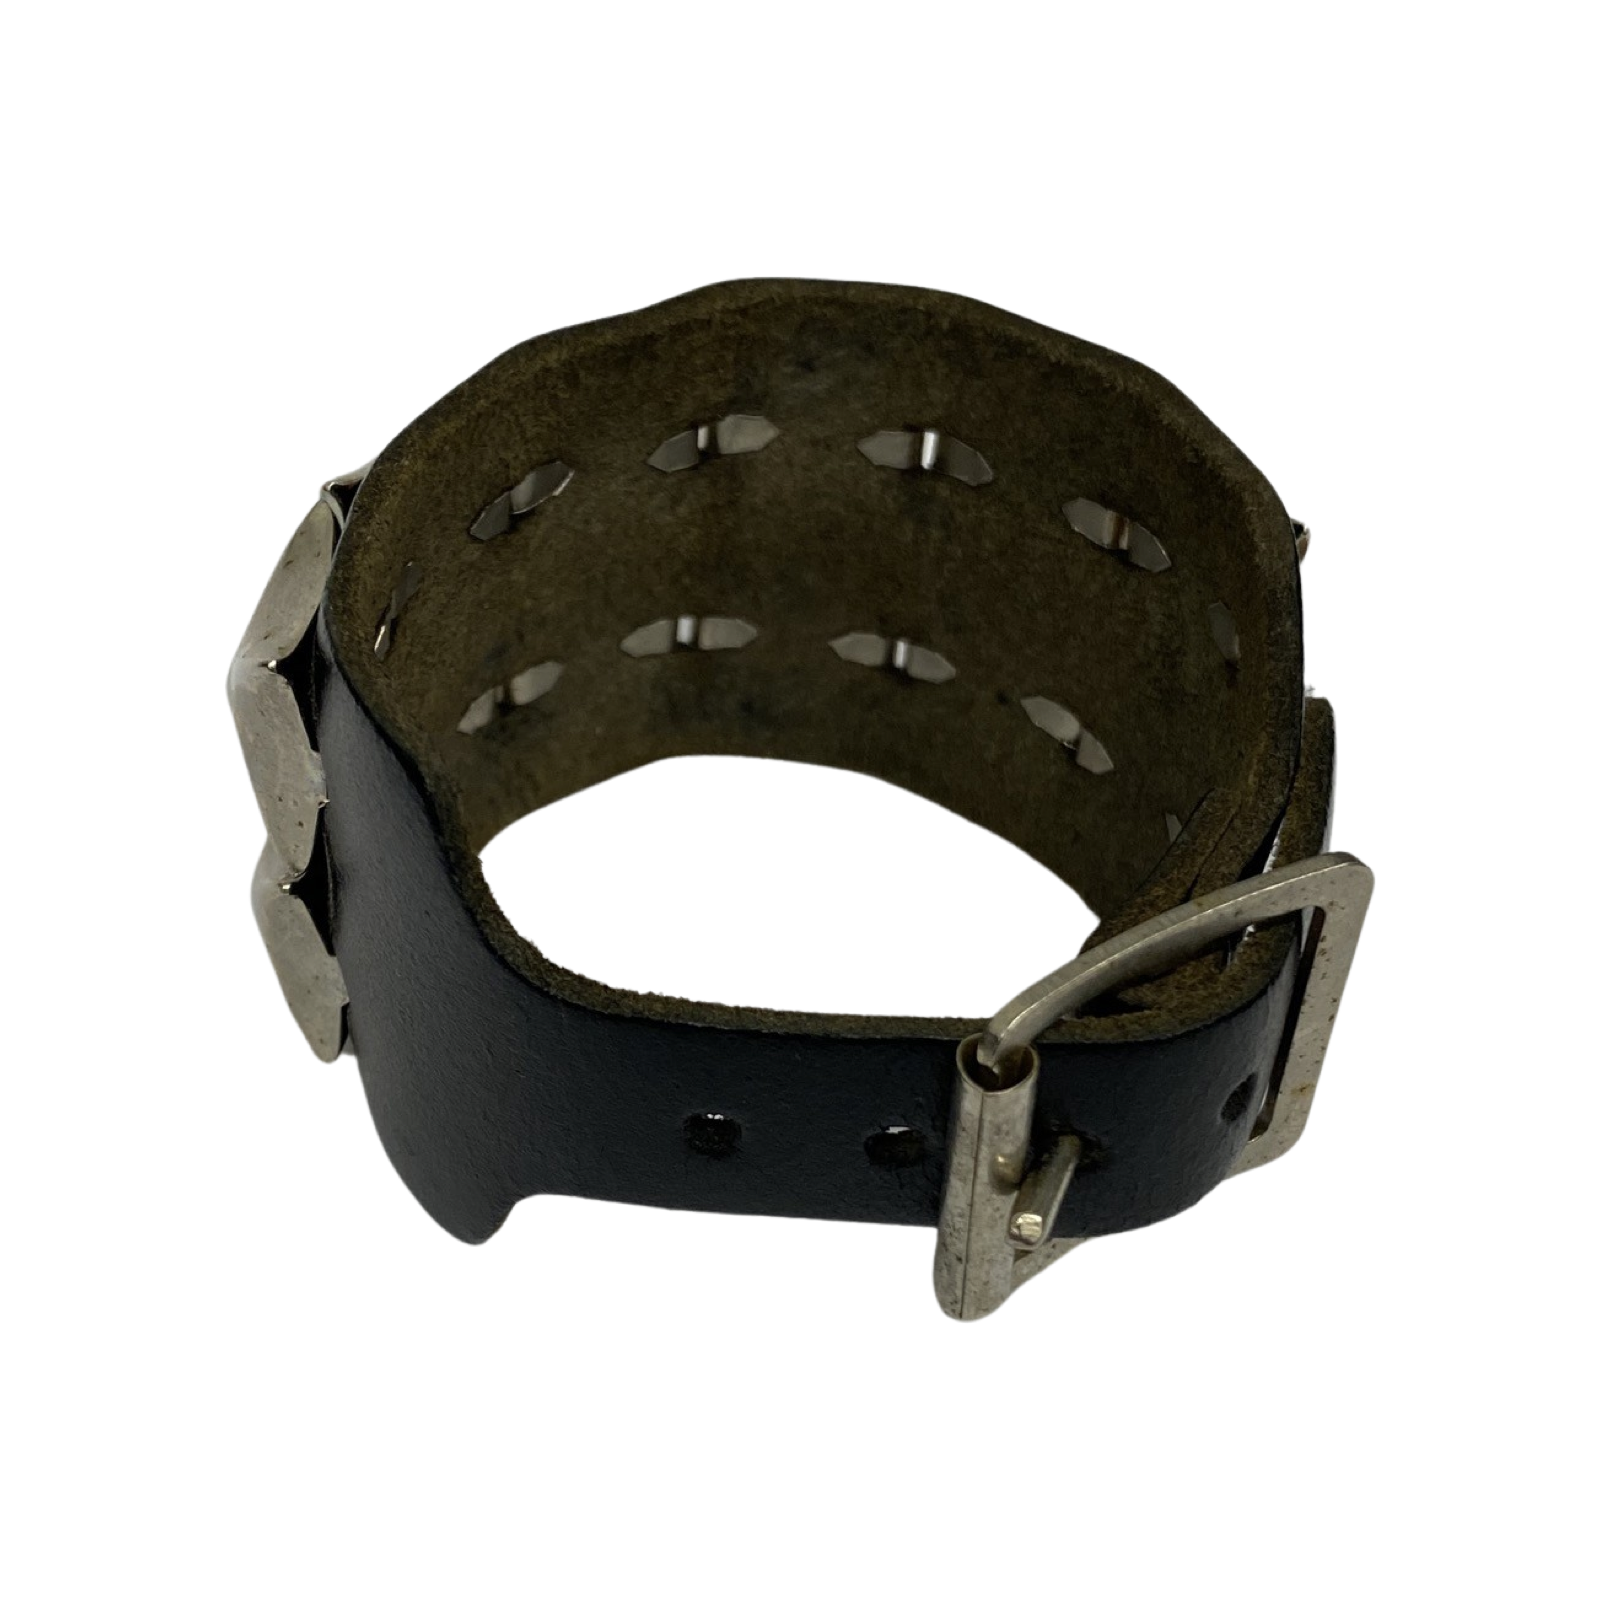 Studded Leather Strap Cuff Bracelet